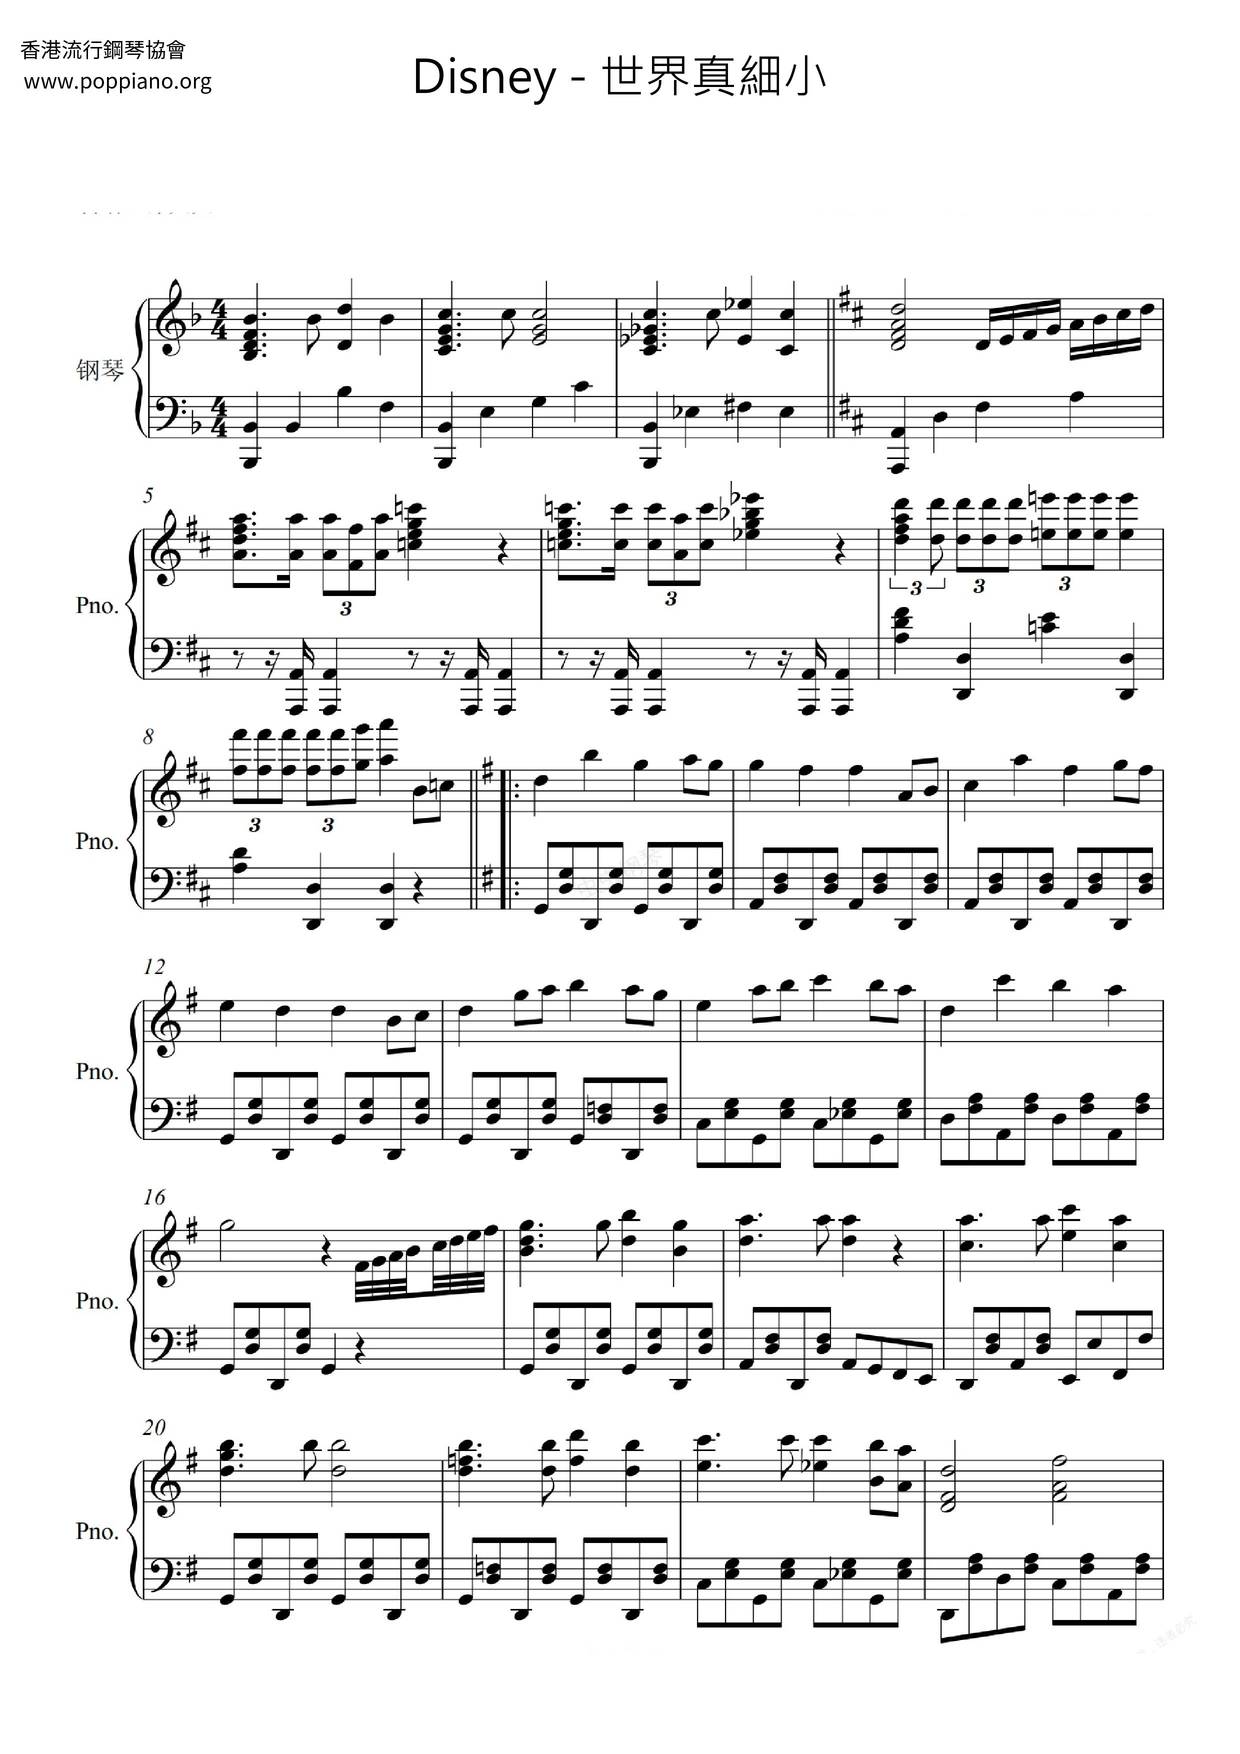 ディズニー ピアノ楽譜